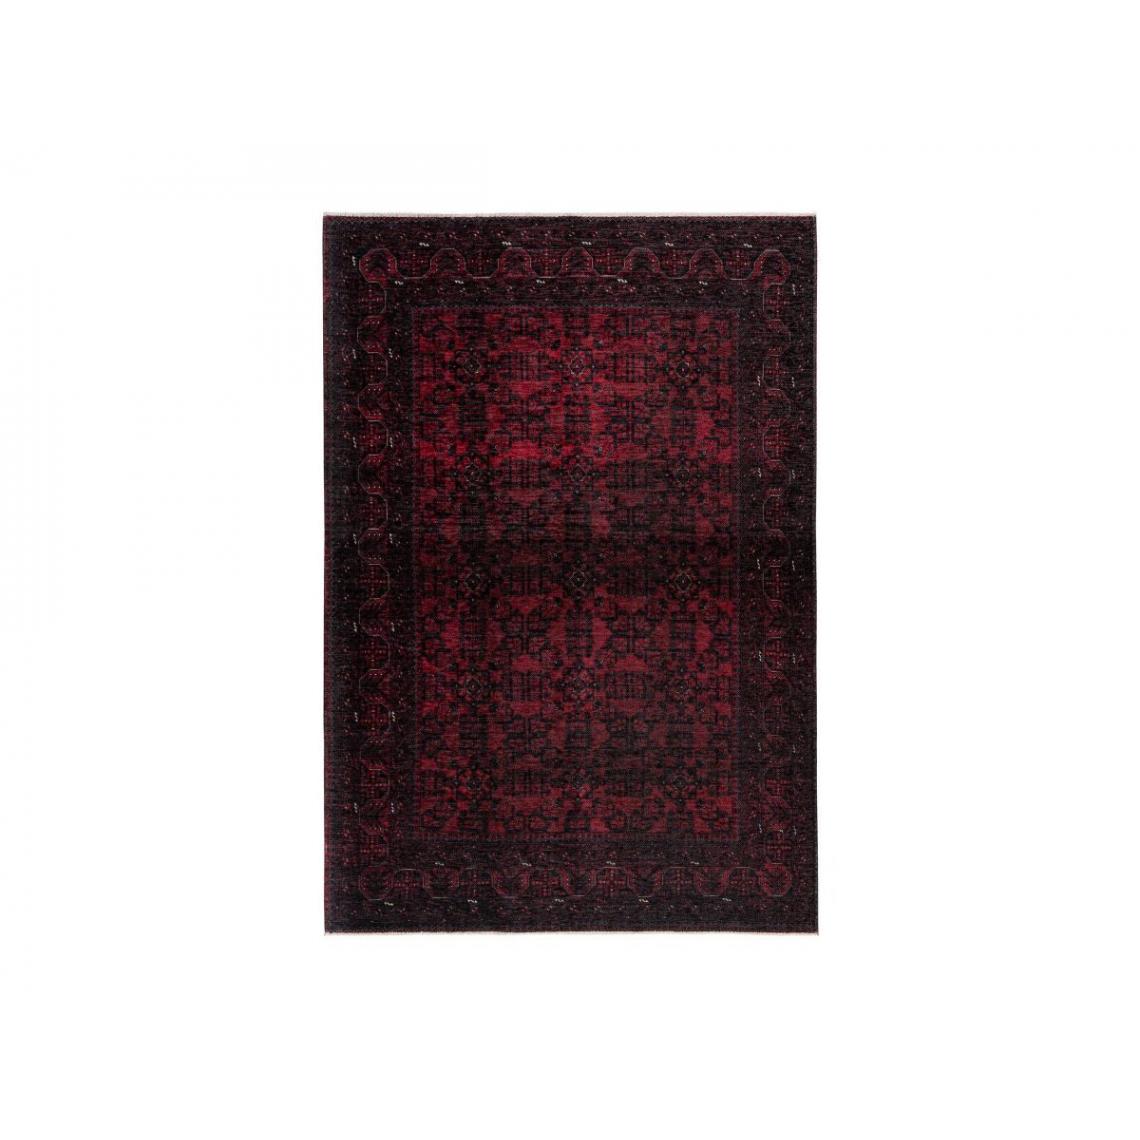 Bobochic - BOBOCHIC Tapis poil court rectangulaire RUBIS motif graphique Rouge 160x230 - Tapis